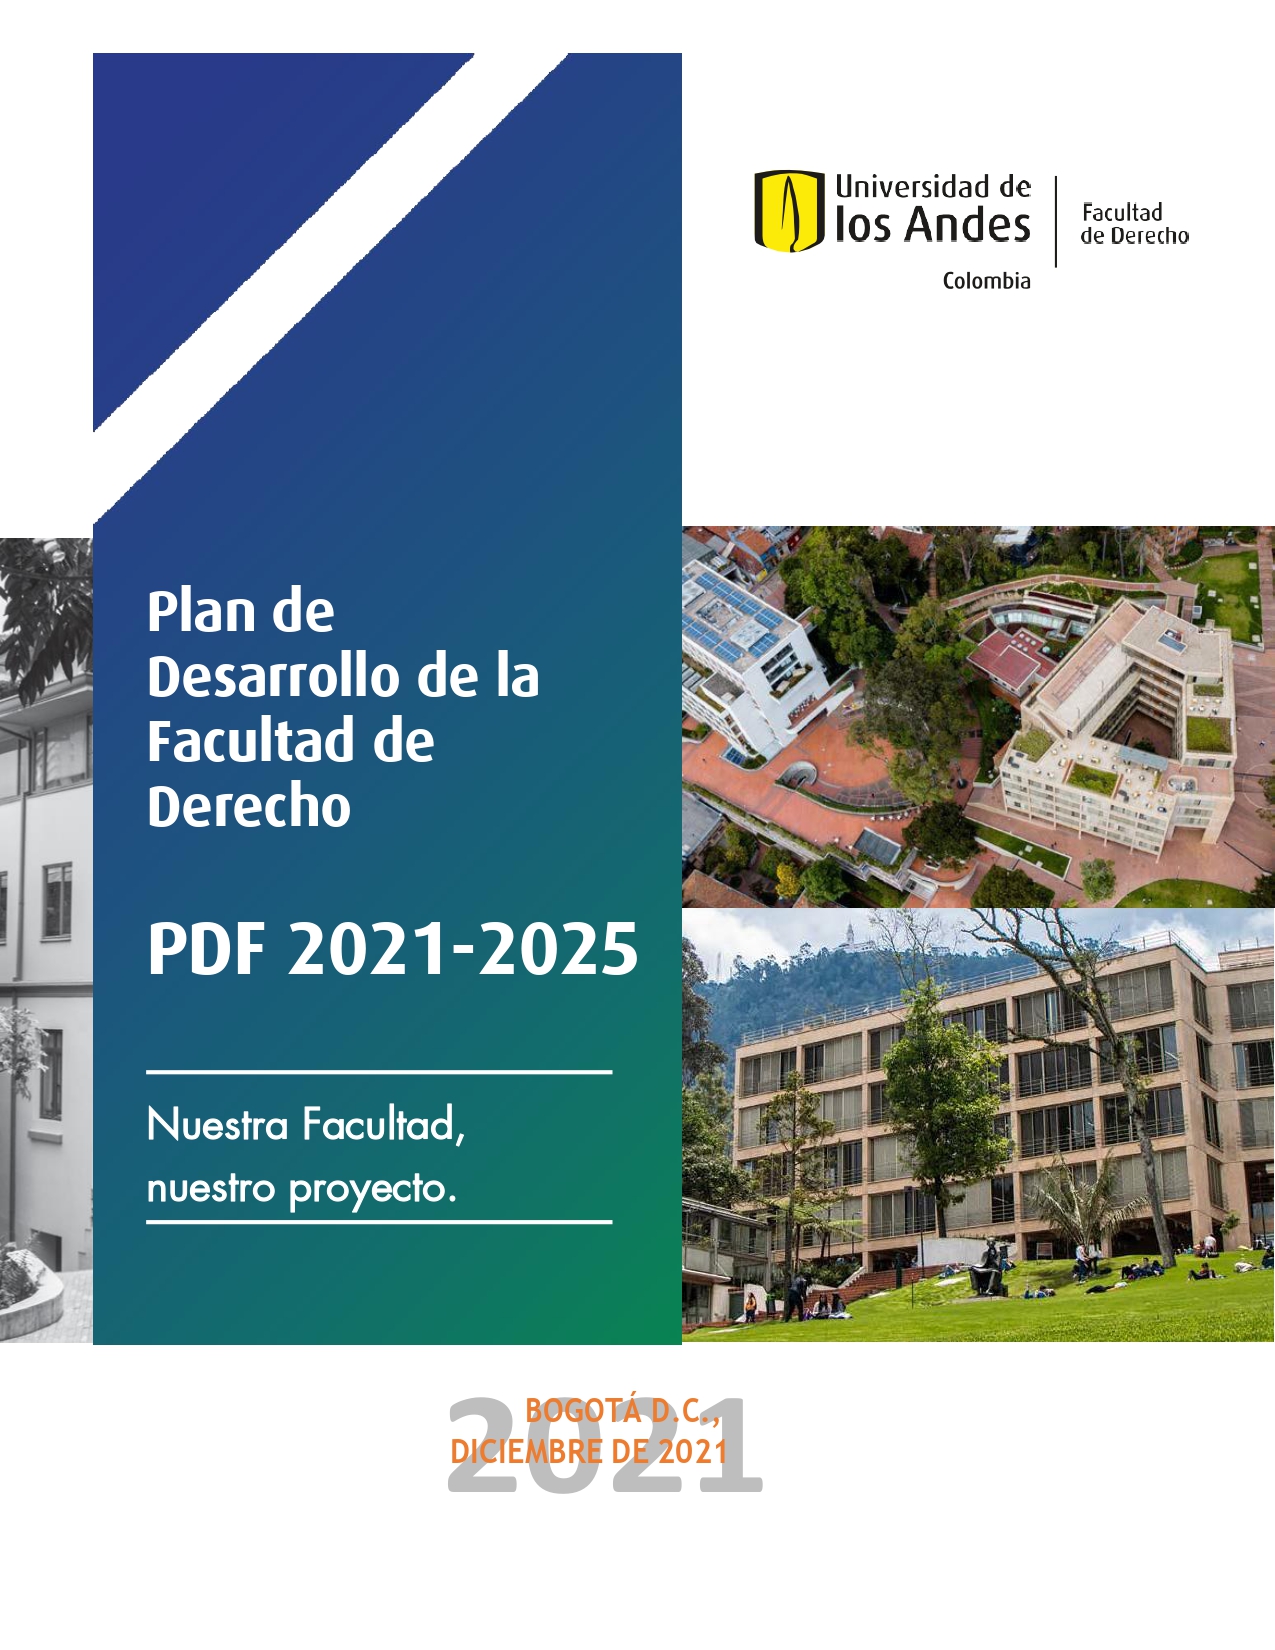 Plan de Desarrollo de la Facultad de Derecho 2021-2025 | Uniandes